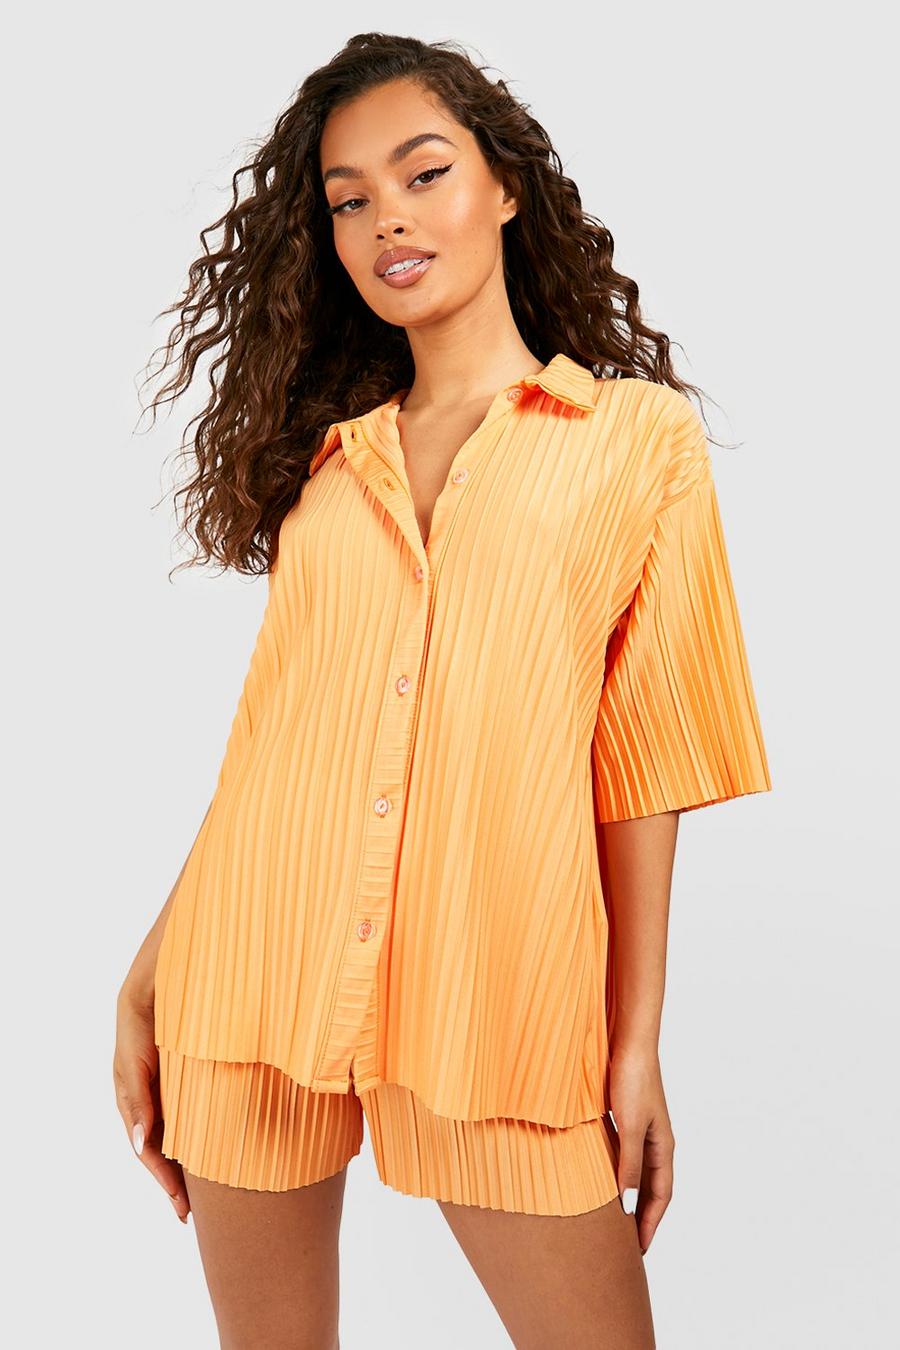 Camisa plisada mate holgada, Tangerine arancio